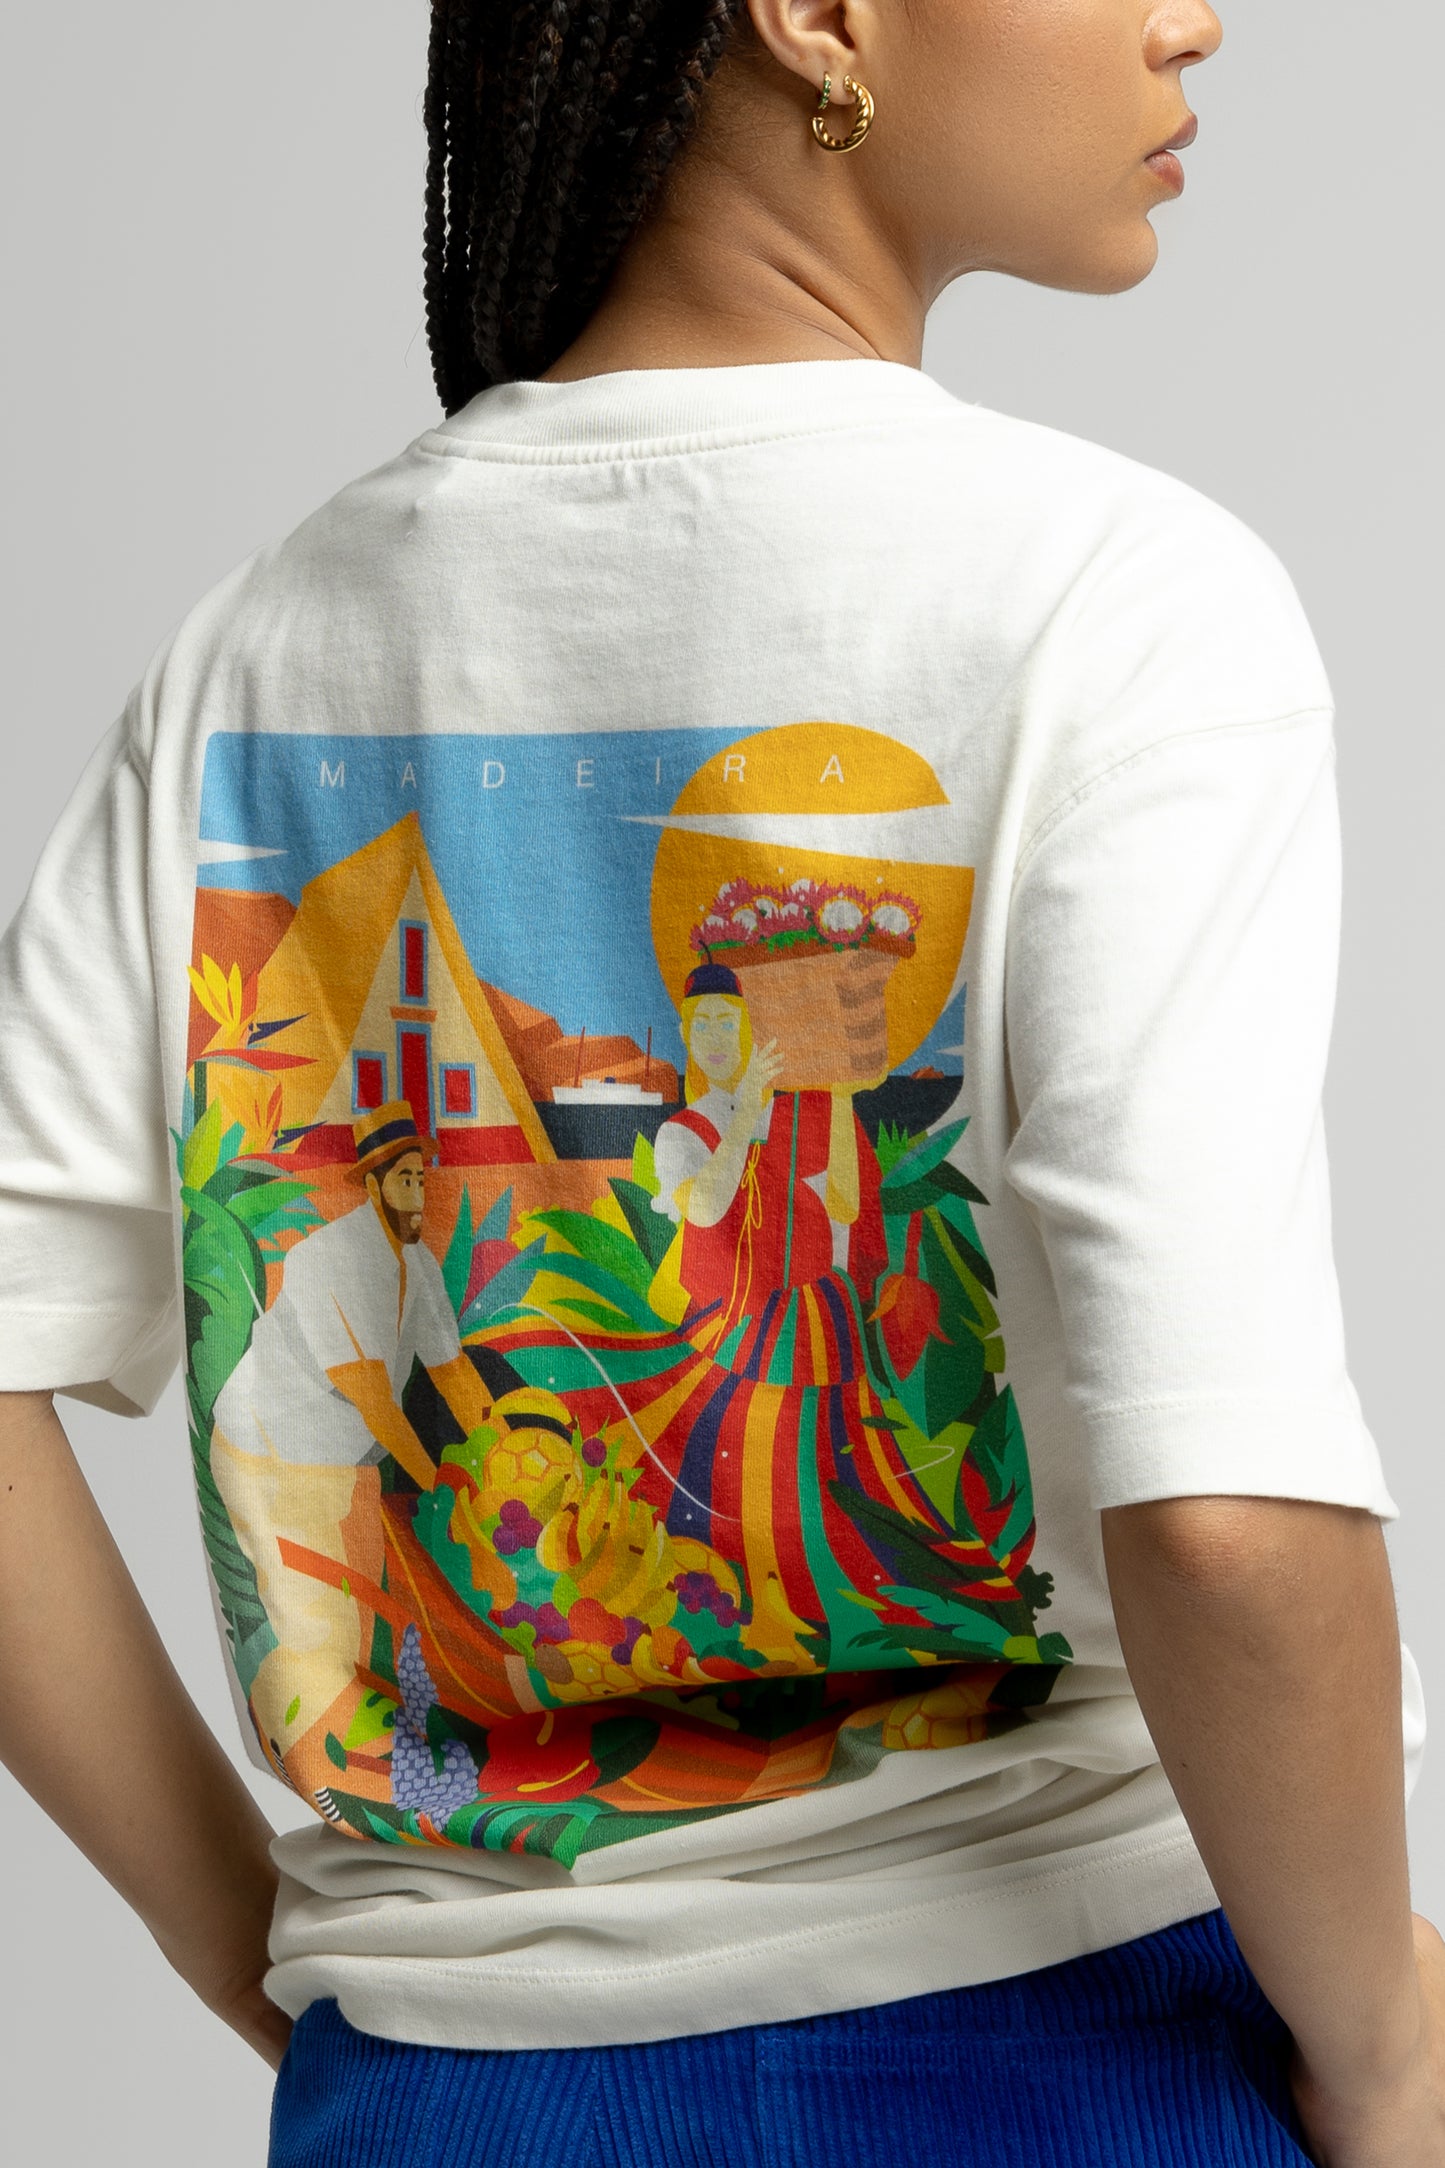 Madeira T-shirt